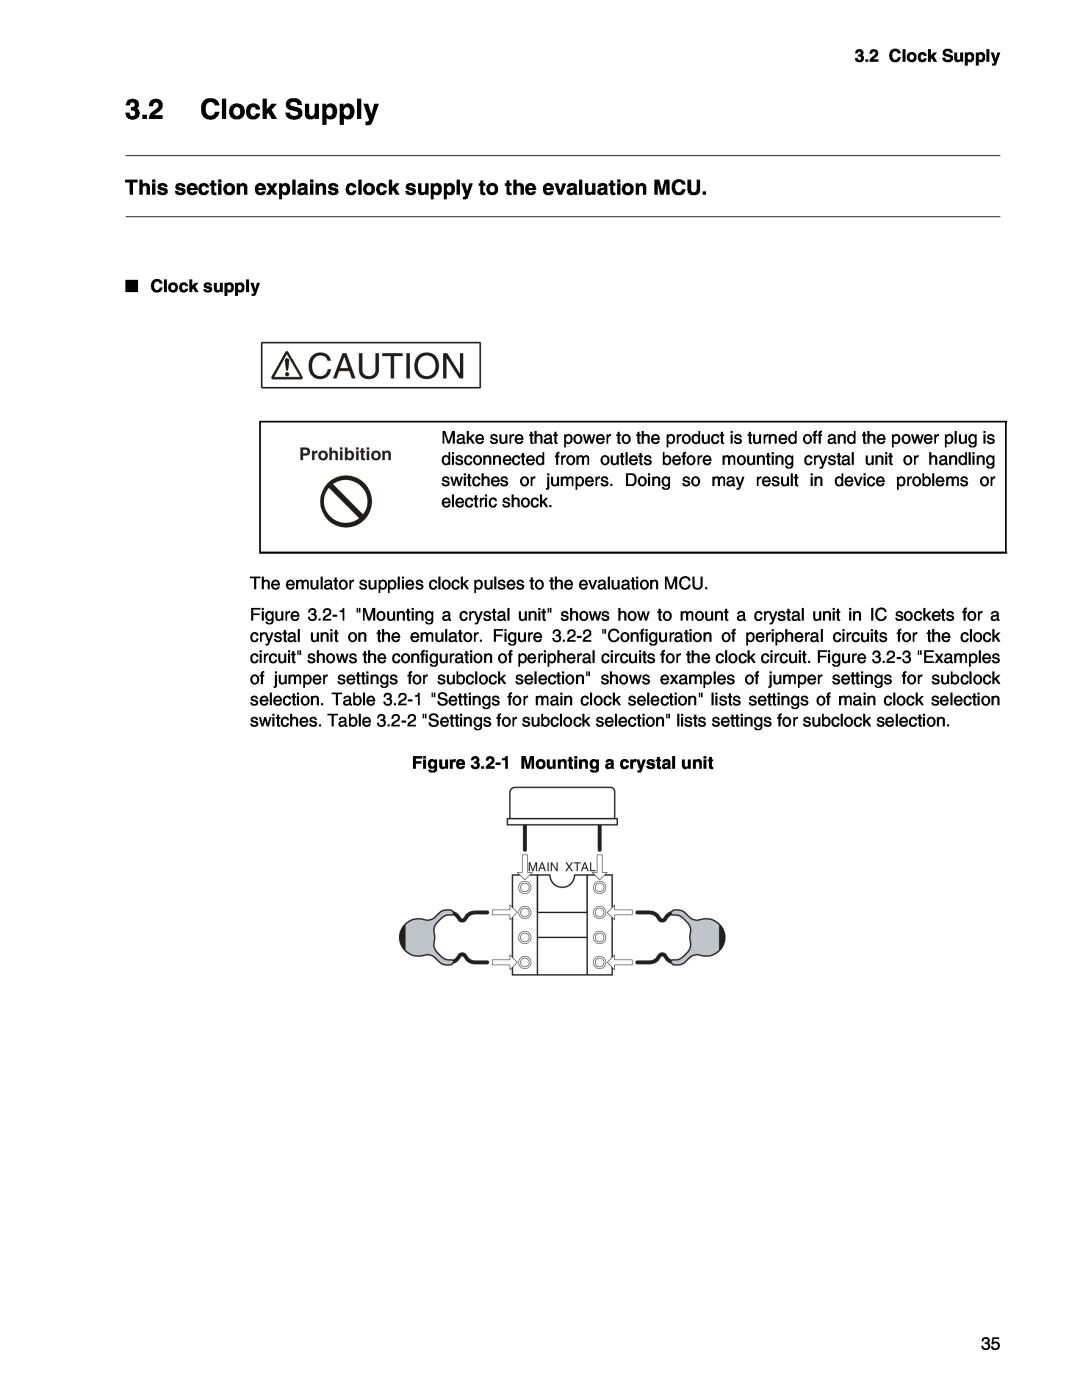 Fujitsu MB2147-01 manual Clock Supply, This section explains clock supply to the evaluation MCU, Clock supply 